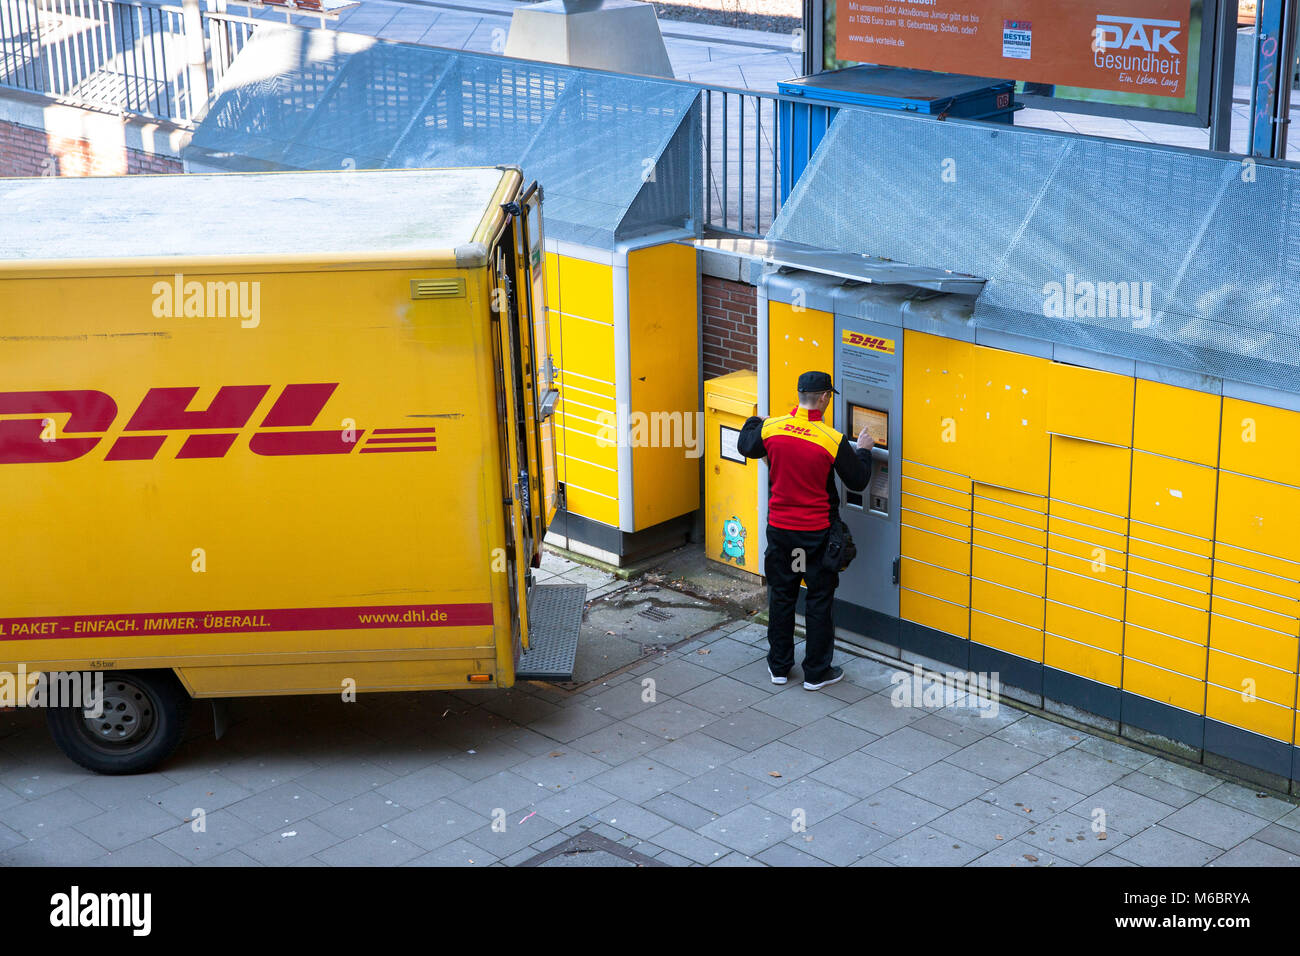 Germania, Colonia, un pacco DHL service driver fornisce un Packstation nel quartiere Deutz. Deutschland, Koeln, ein DHL beliefert Fahrer eine Packsta Foto Stock